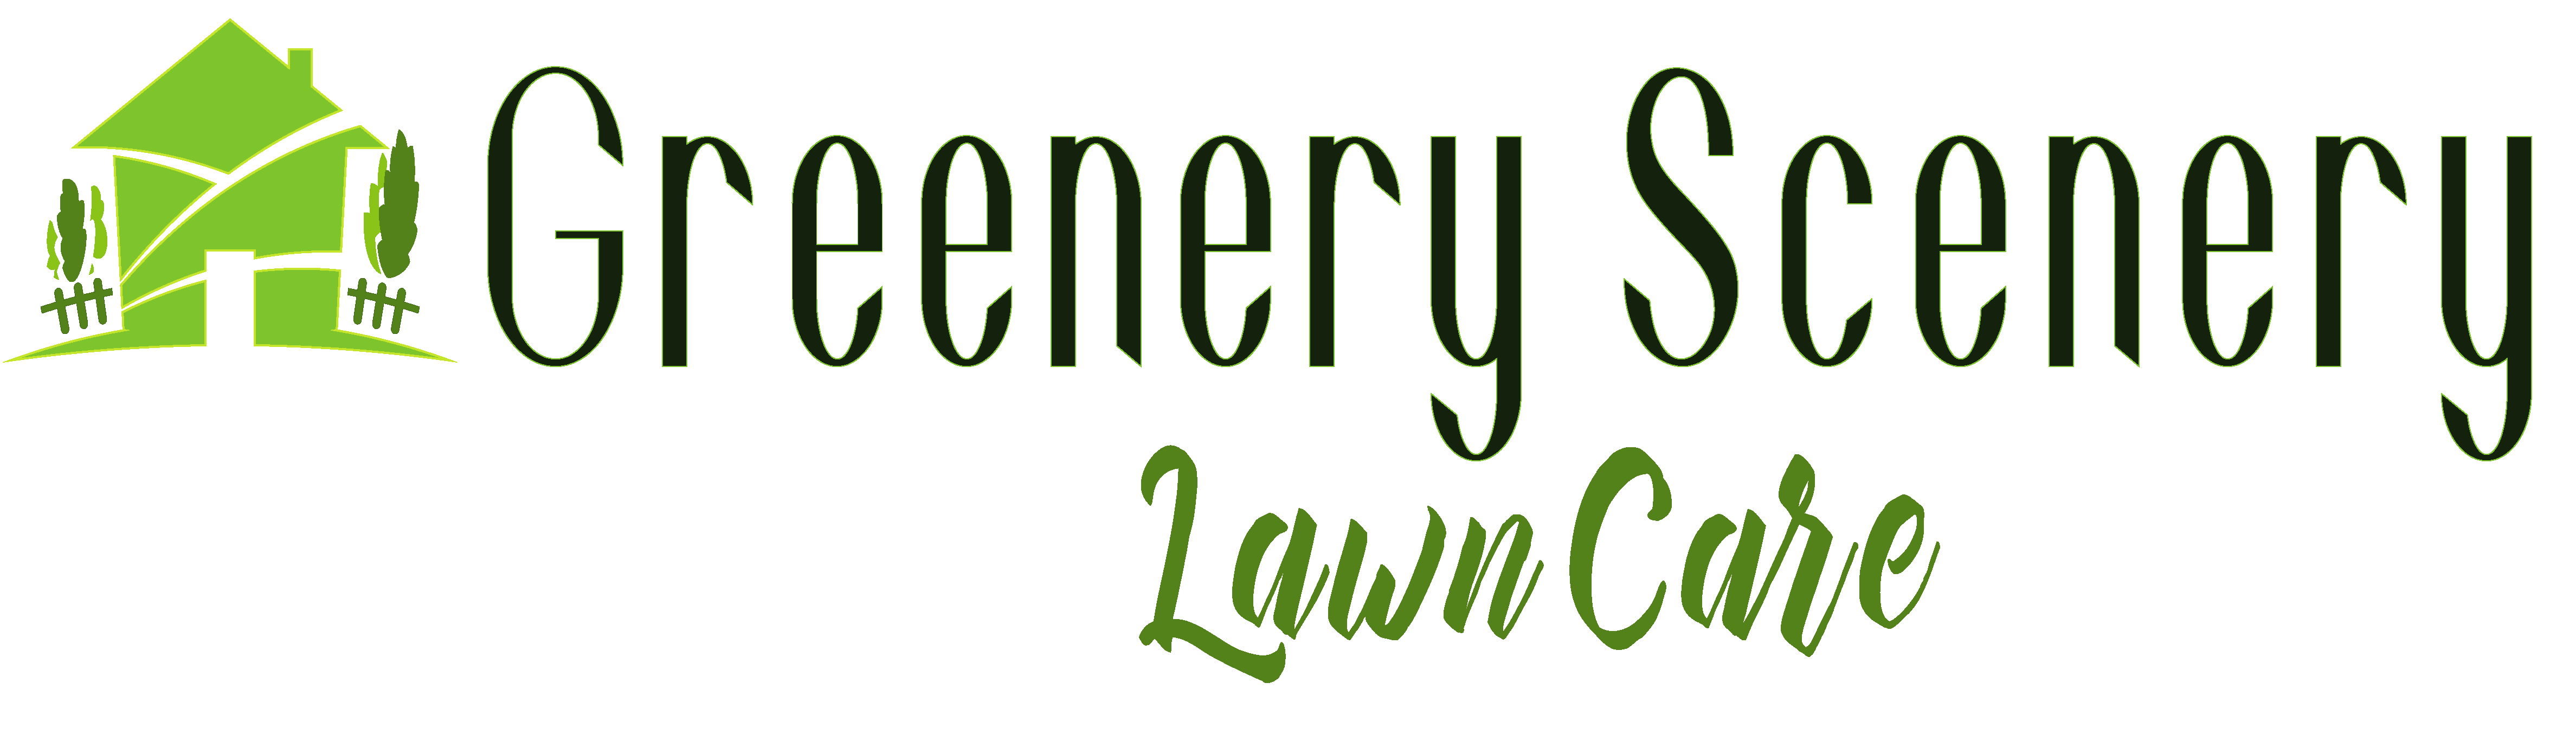 Greenery Scenery Lawn Care Logo